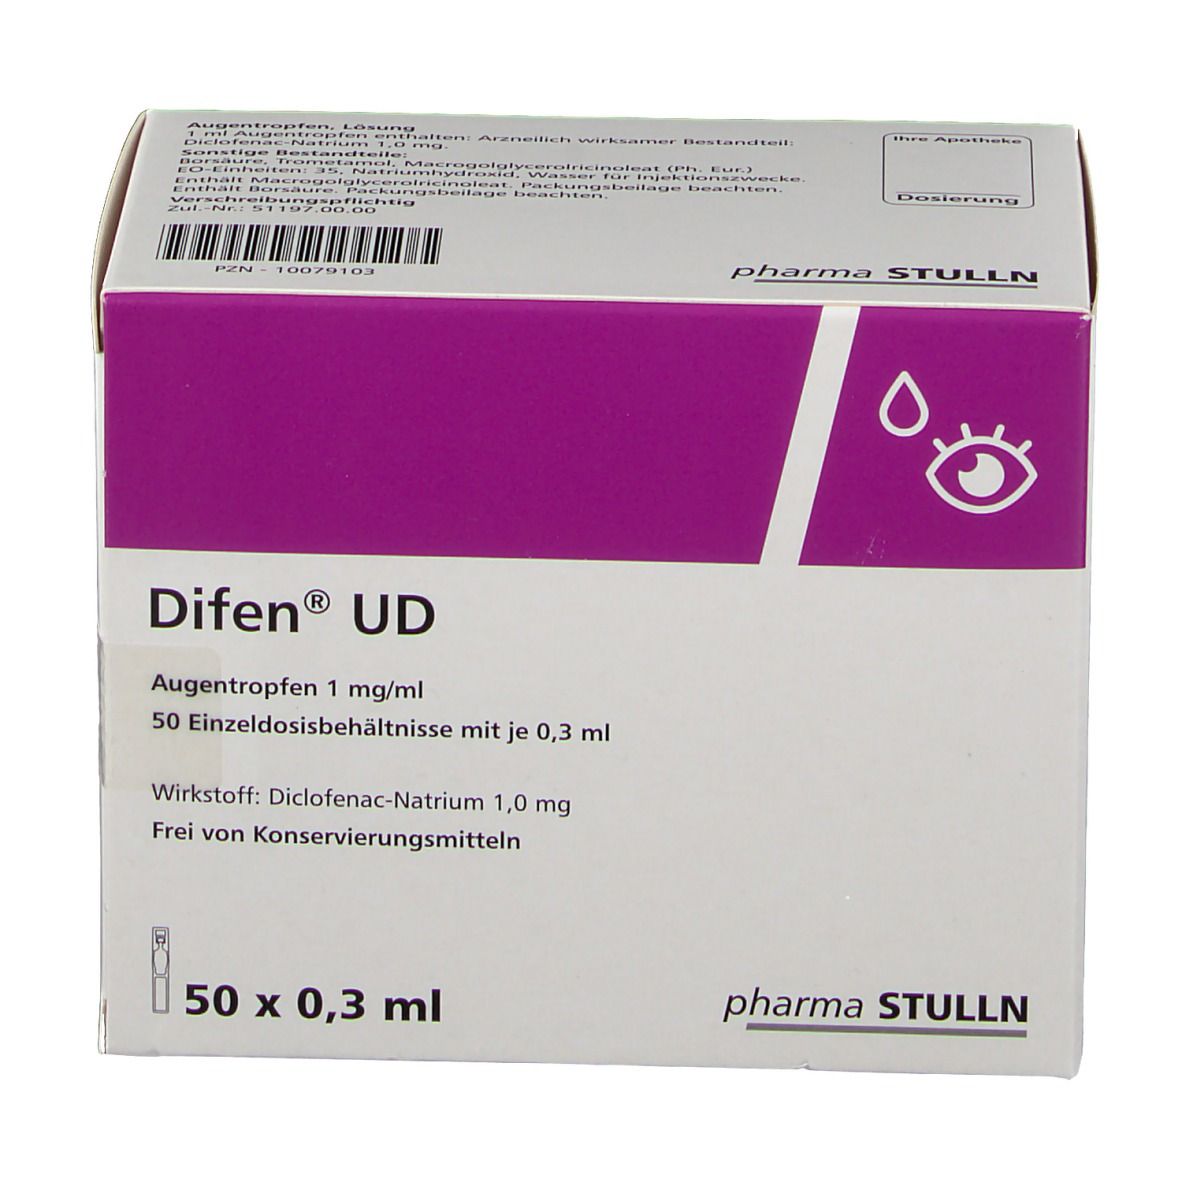 Difen® UD 1 mg/ml